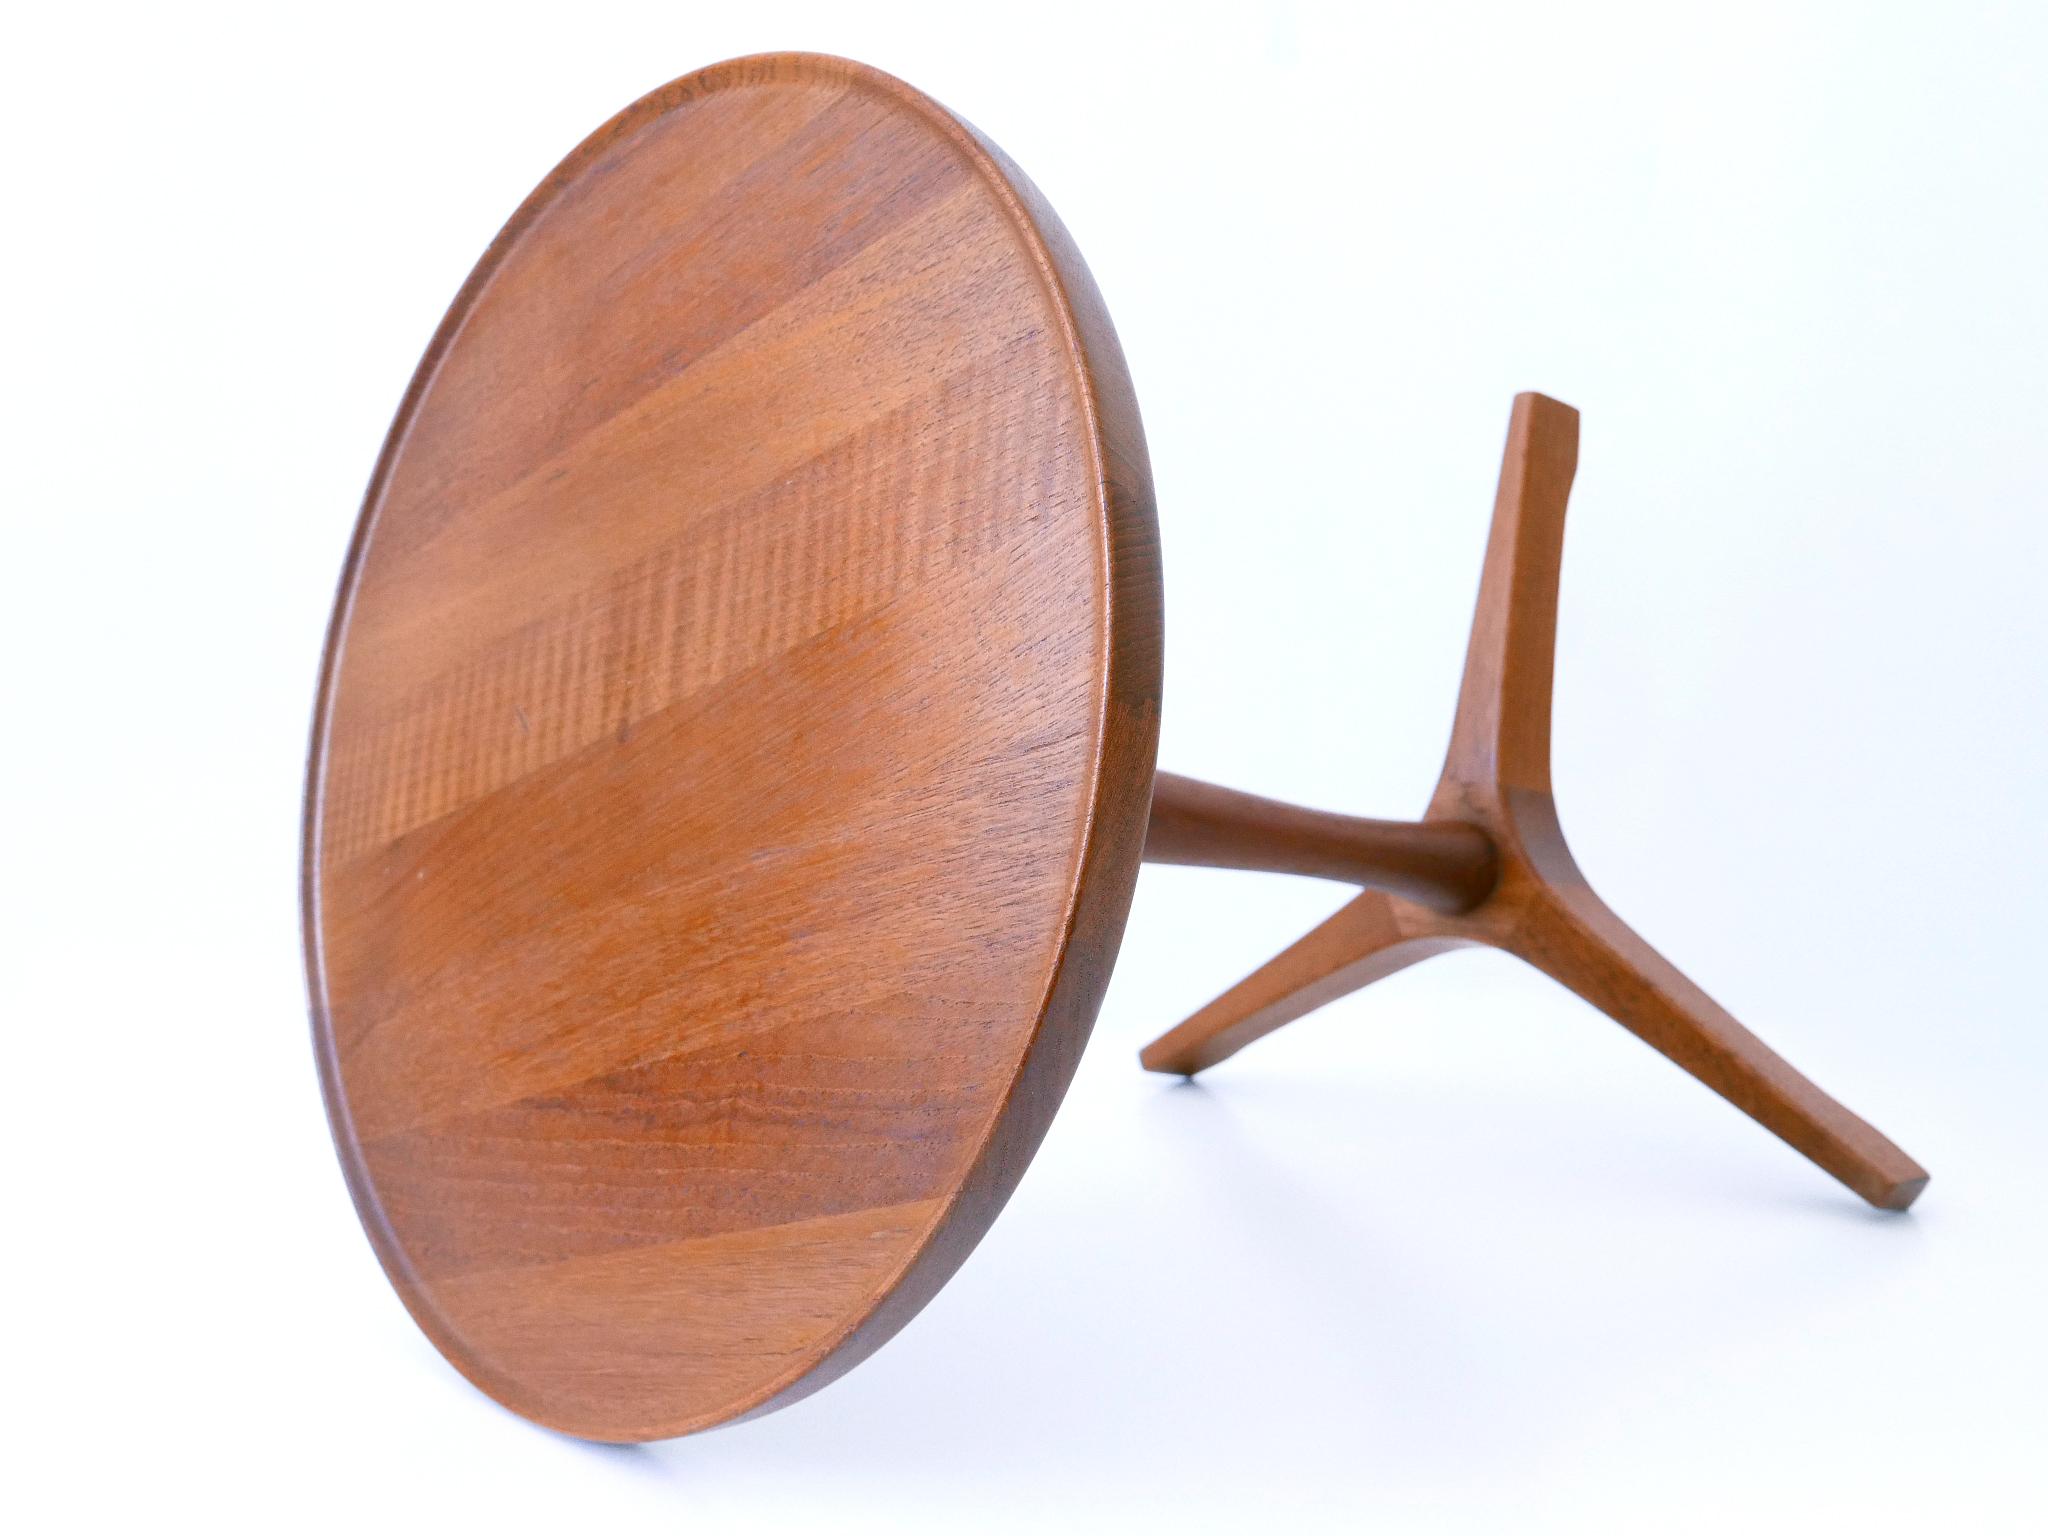 Elegant Mid-Century Modern Teak Side Table by Hans C. Andersen for Artek 1960s For Sale 6